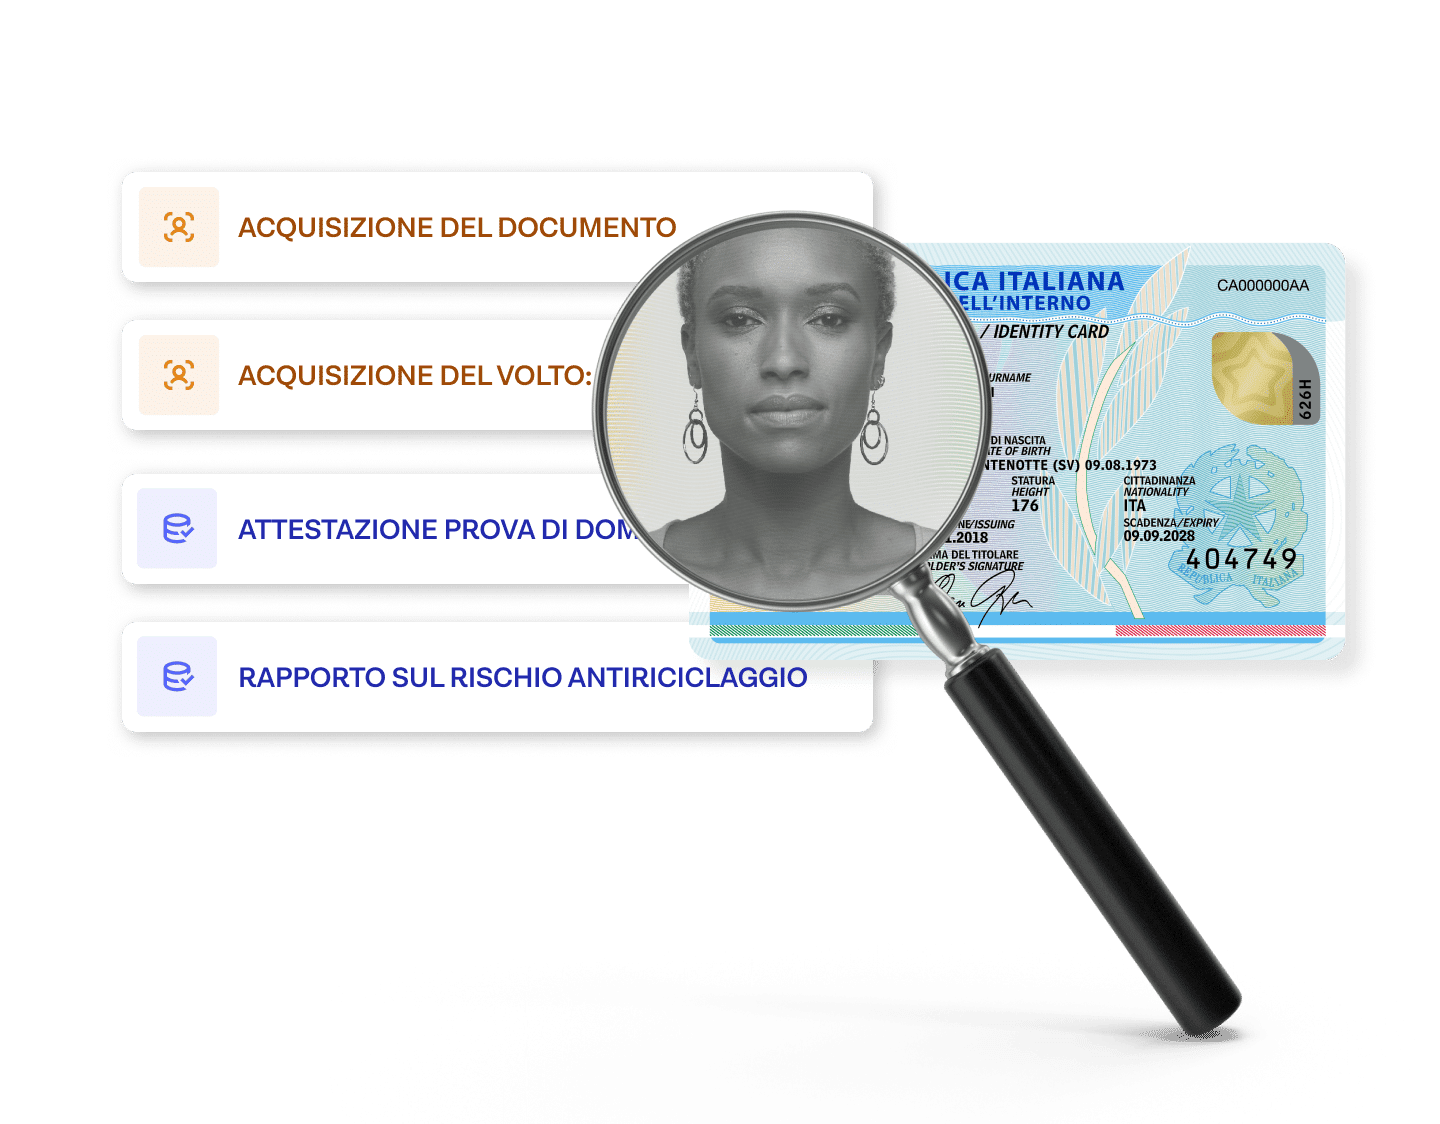 Un documento di identità che viene analizzato e confrontato con elenchi di dati biometrici e sanzioni.